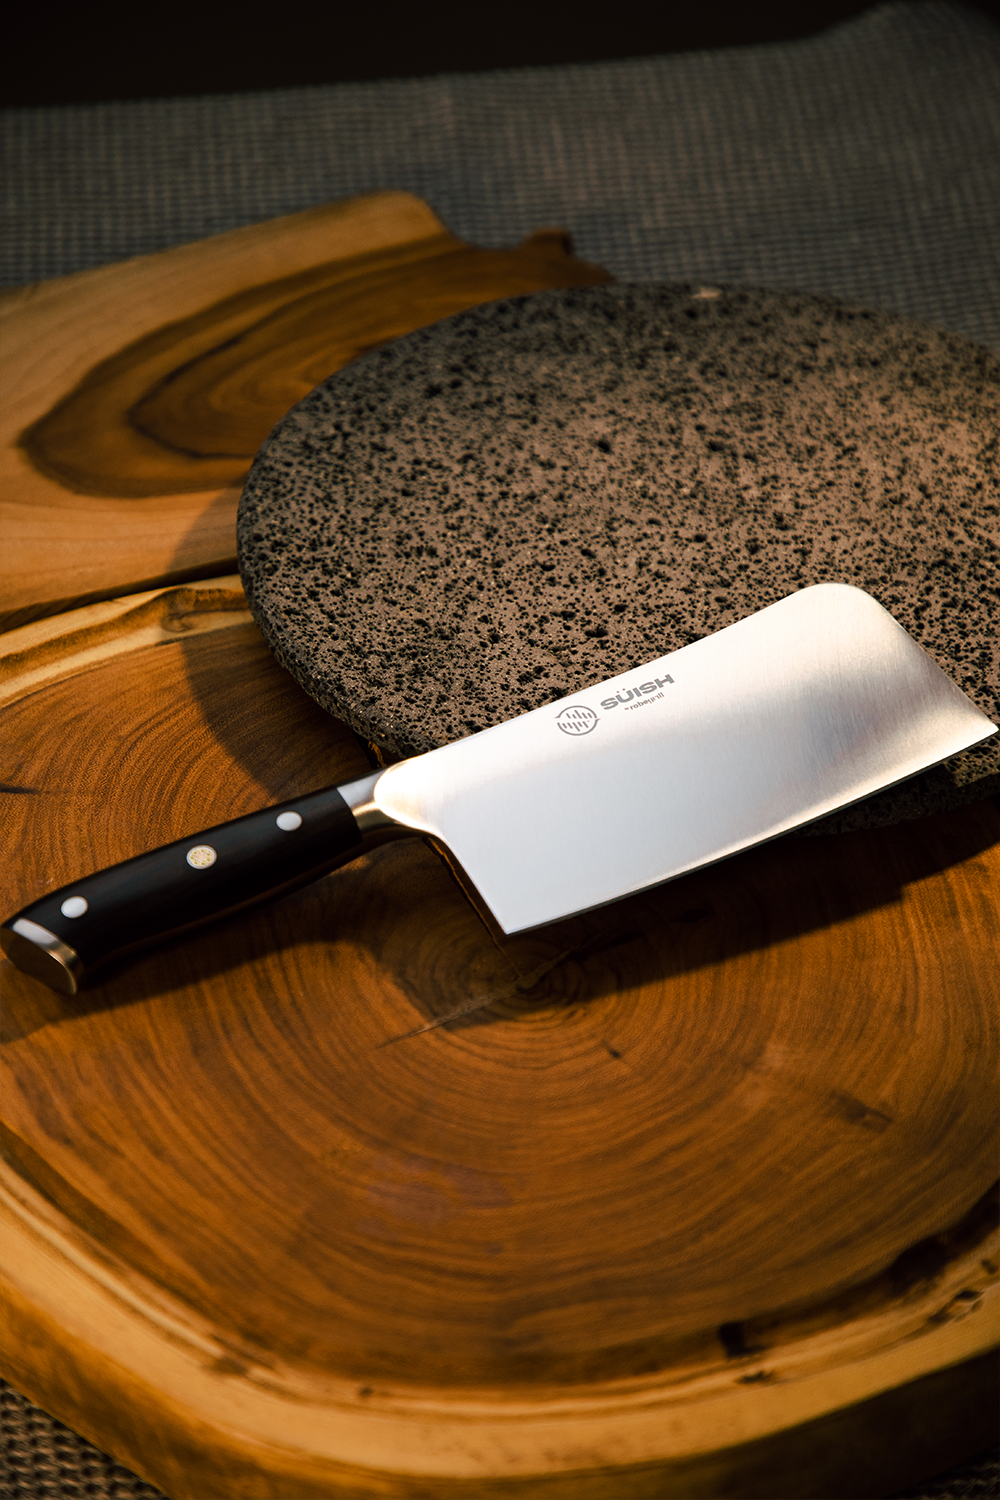 cuchillo hacha representando suish the soound of cooking con un filo y durabilidad inigualable, ideal para cortar huesos y carne a la parrilla 